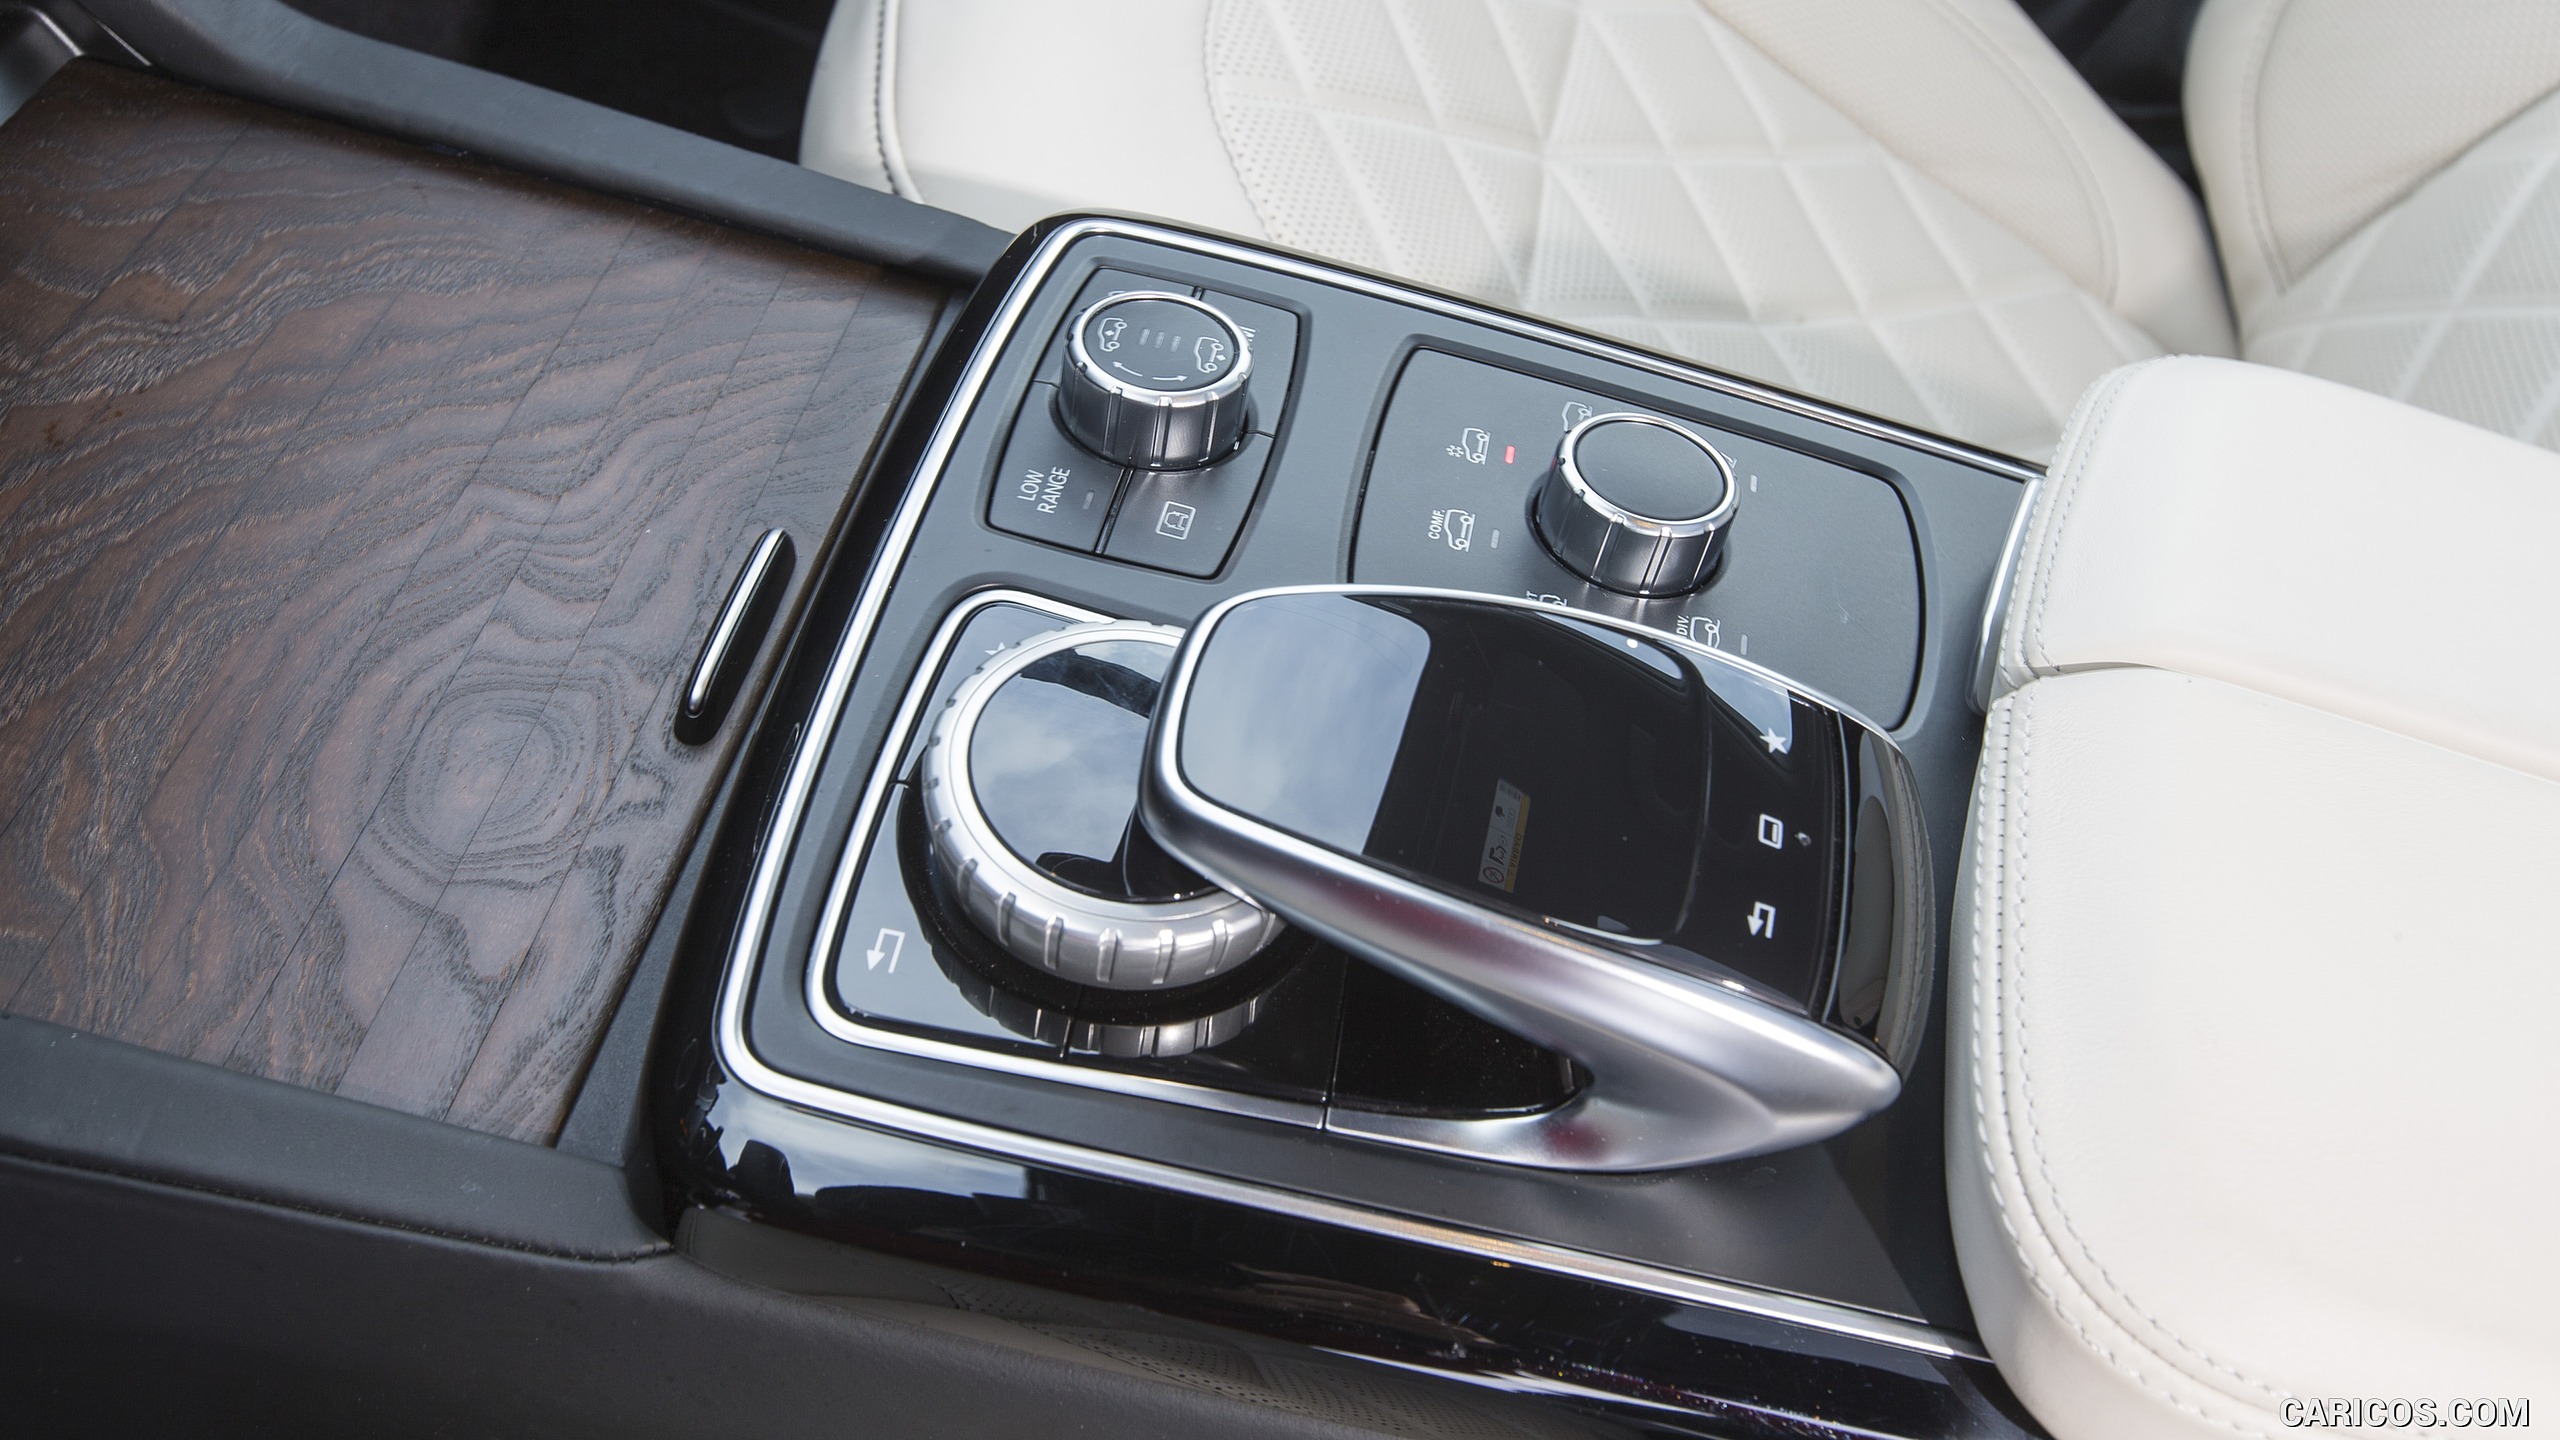 2017 Mercedes-Benz GLS 350d 4MATIC AMG Line - Interior, Controls, #210 of 255